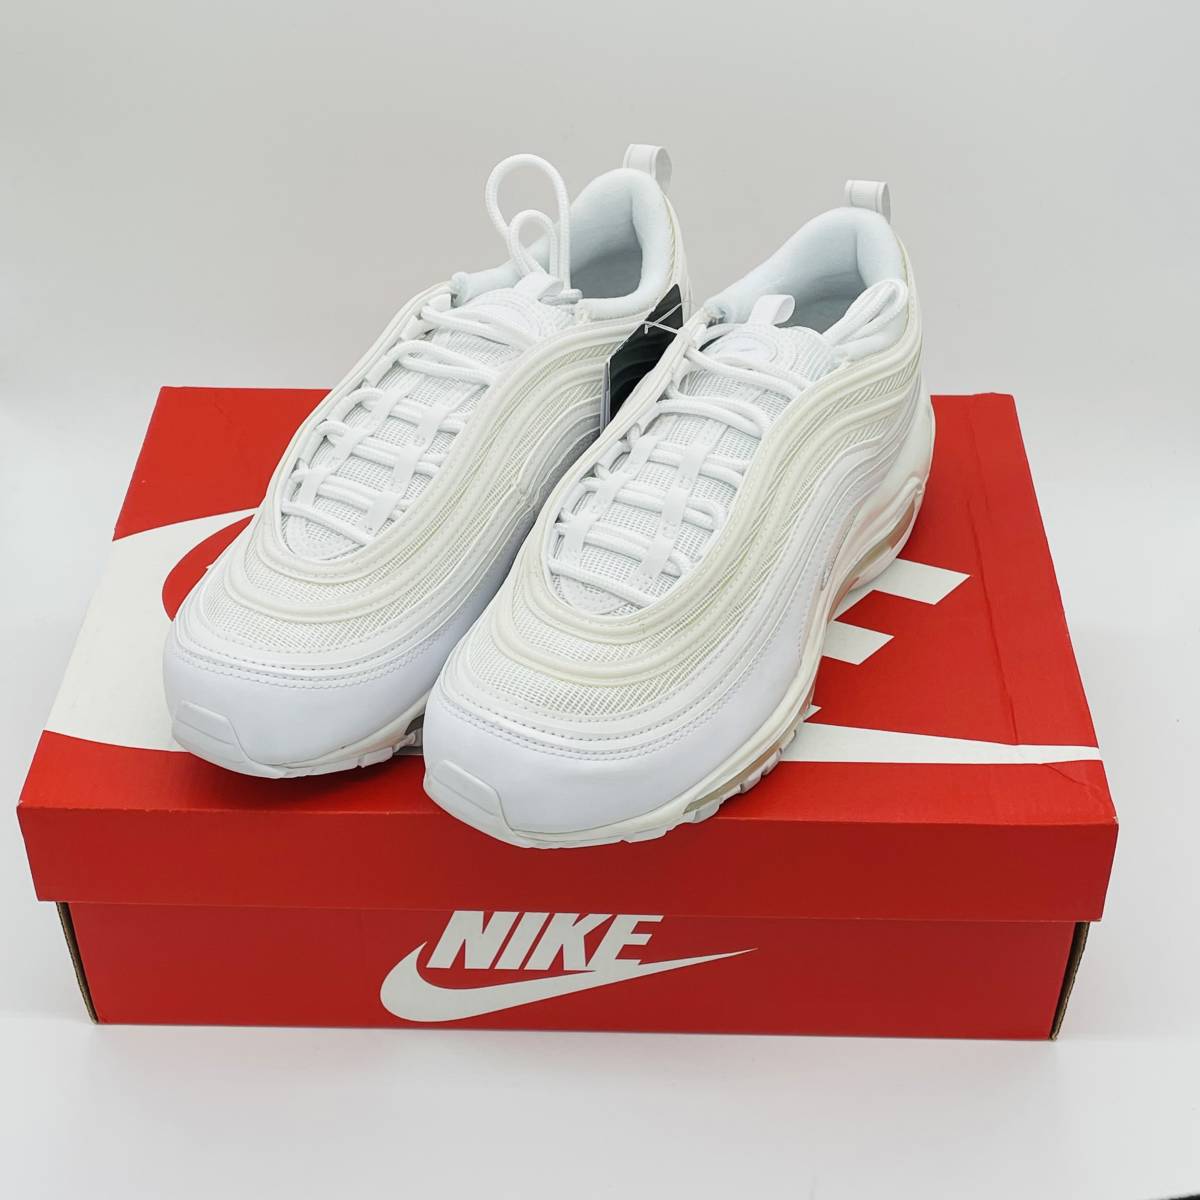 【新品未使用】Nike Air Max 97 White Pure Platinum 921733-100 ナイキ エアマックス エアフォース1 Airforce ホワイト 白 アディダス_画像1